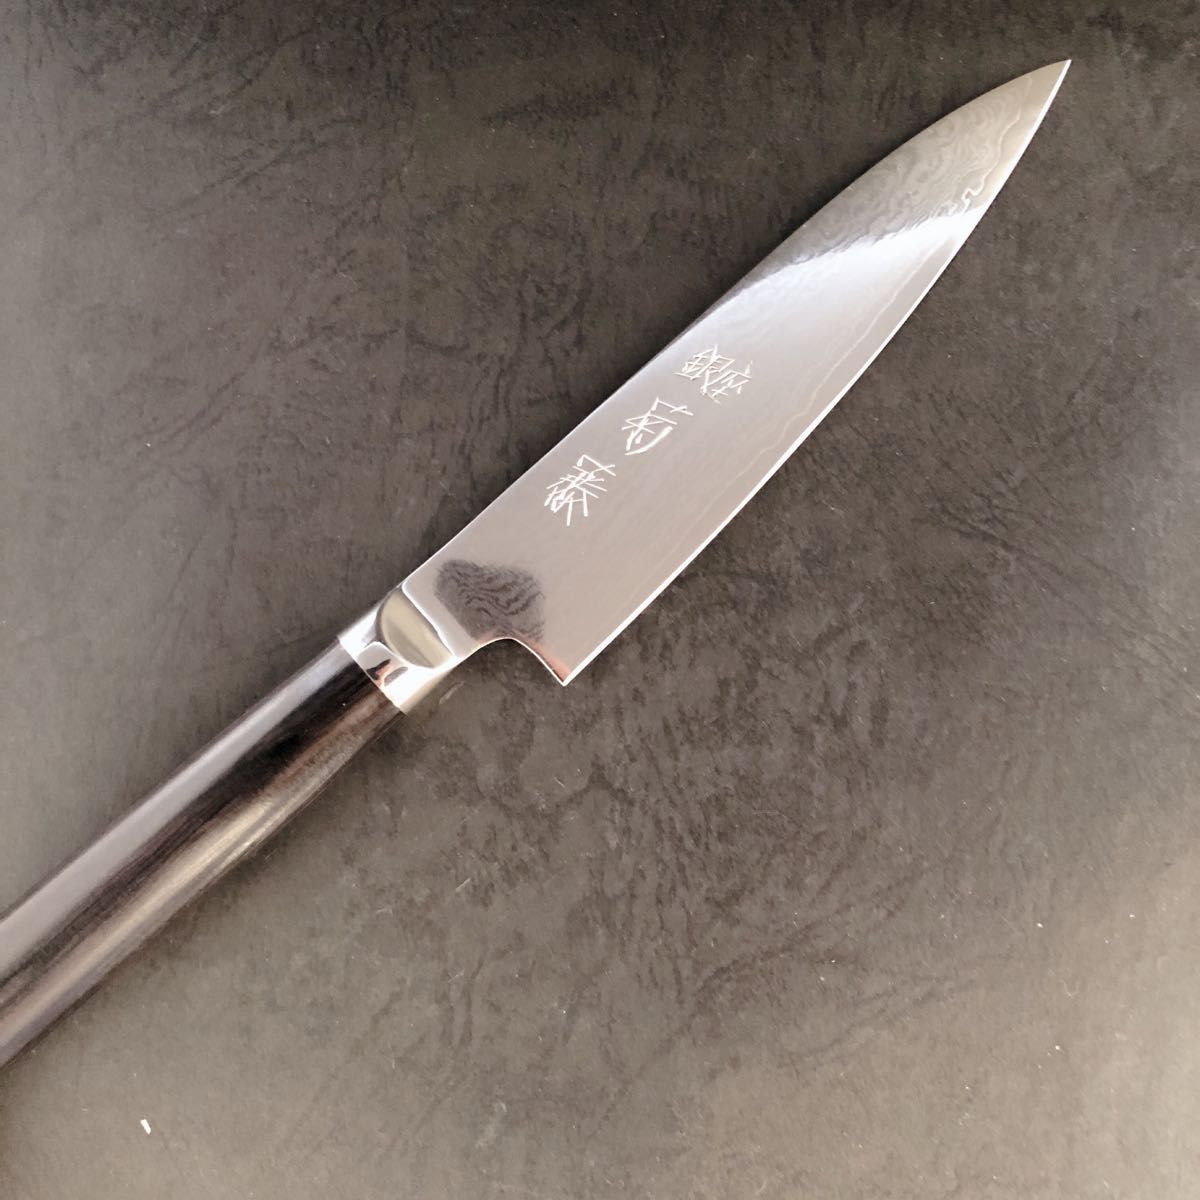 銀座菊藤 特選 ペティーナイフ丸柄型 130ミリ V金10号多層鋼